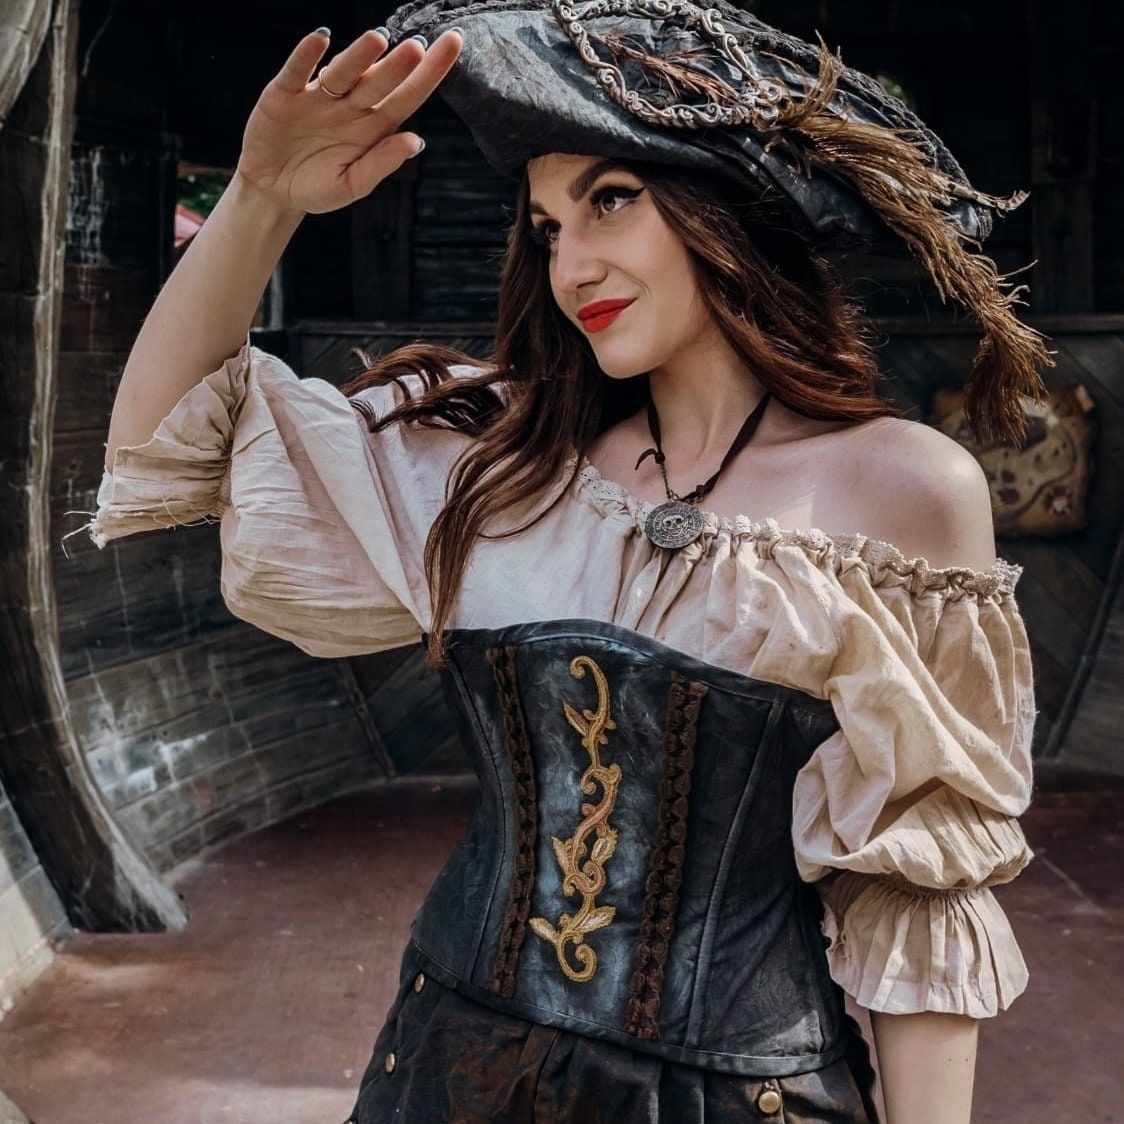 Pirate Costume/pirate Costume/pirate Costume With